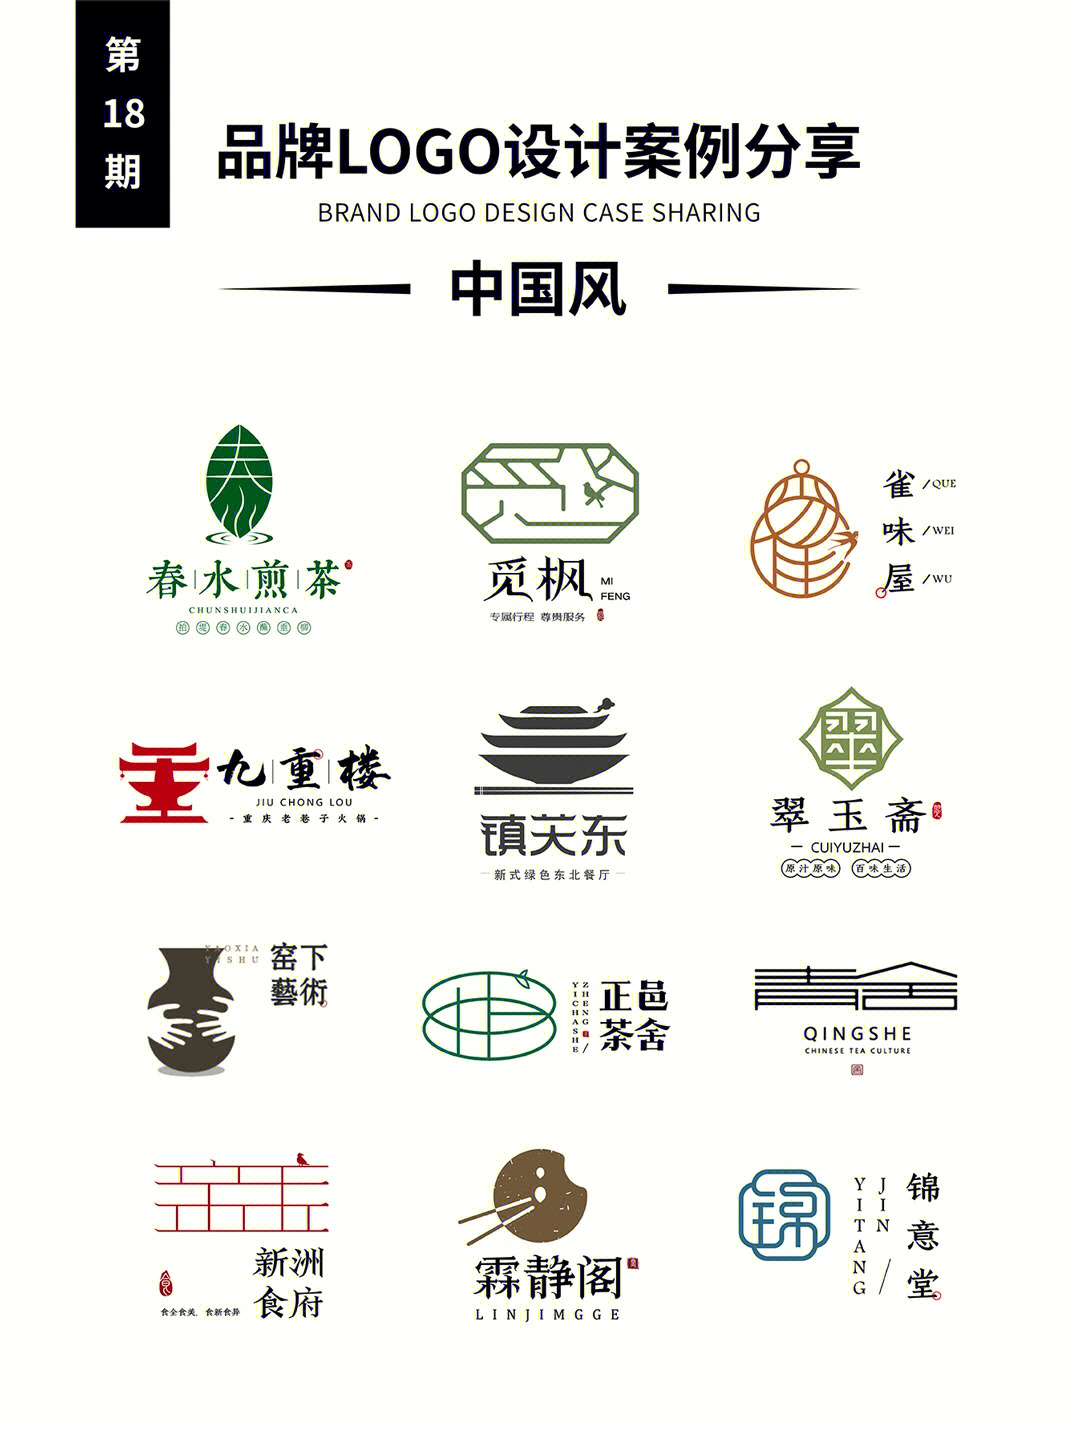 品牌logo设计案例分享第18期中国风